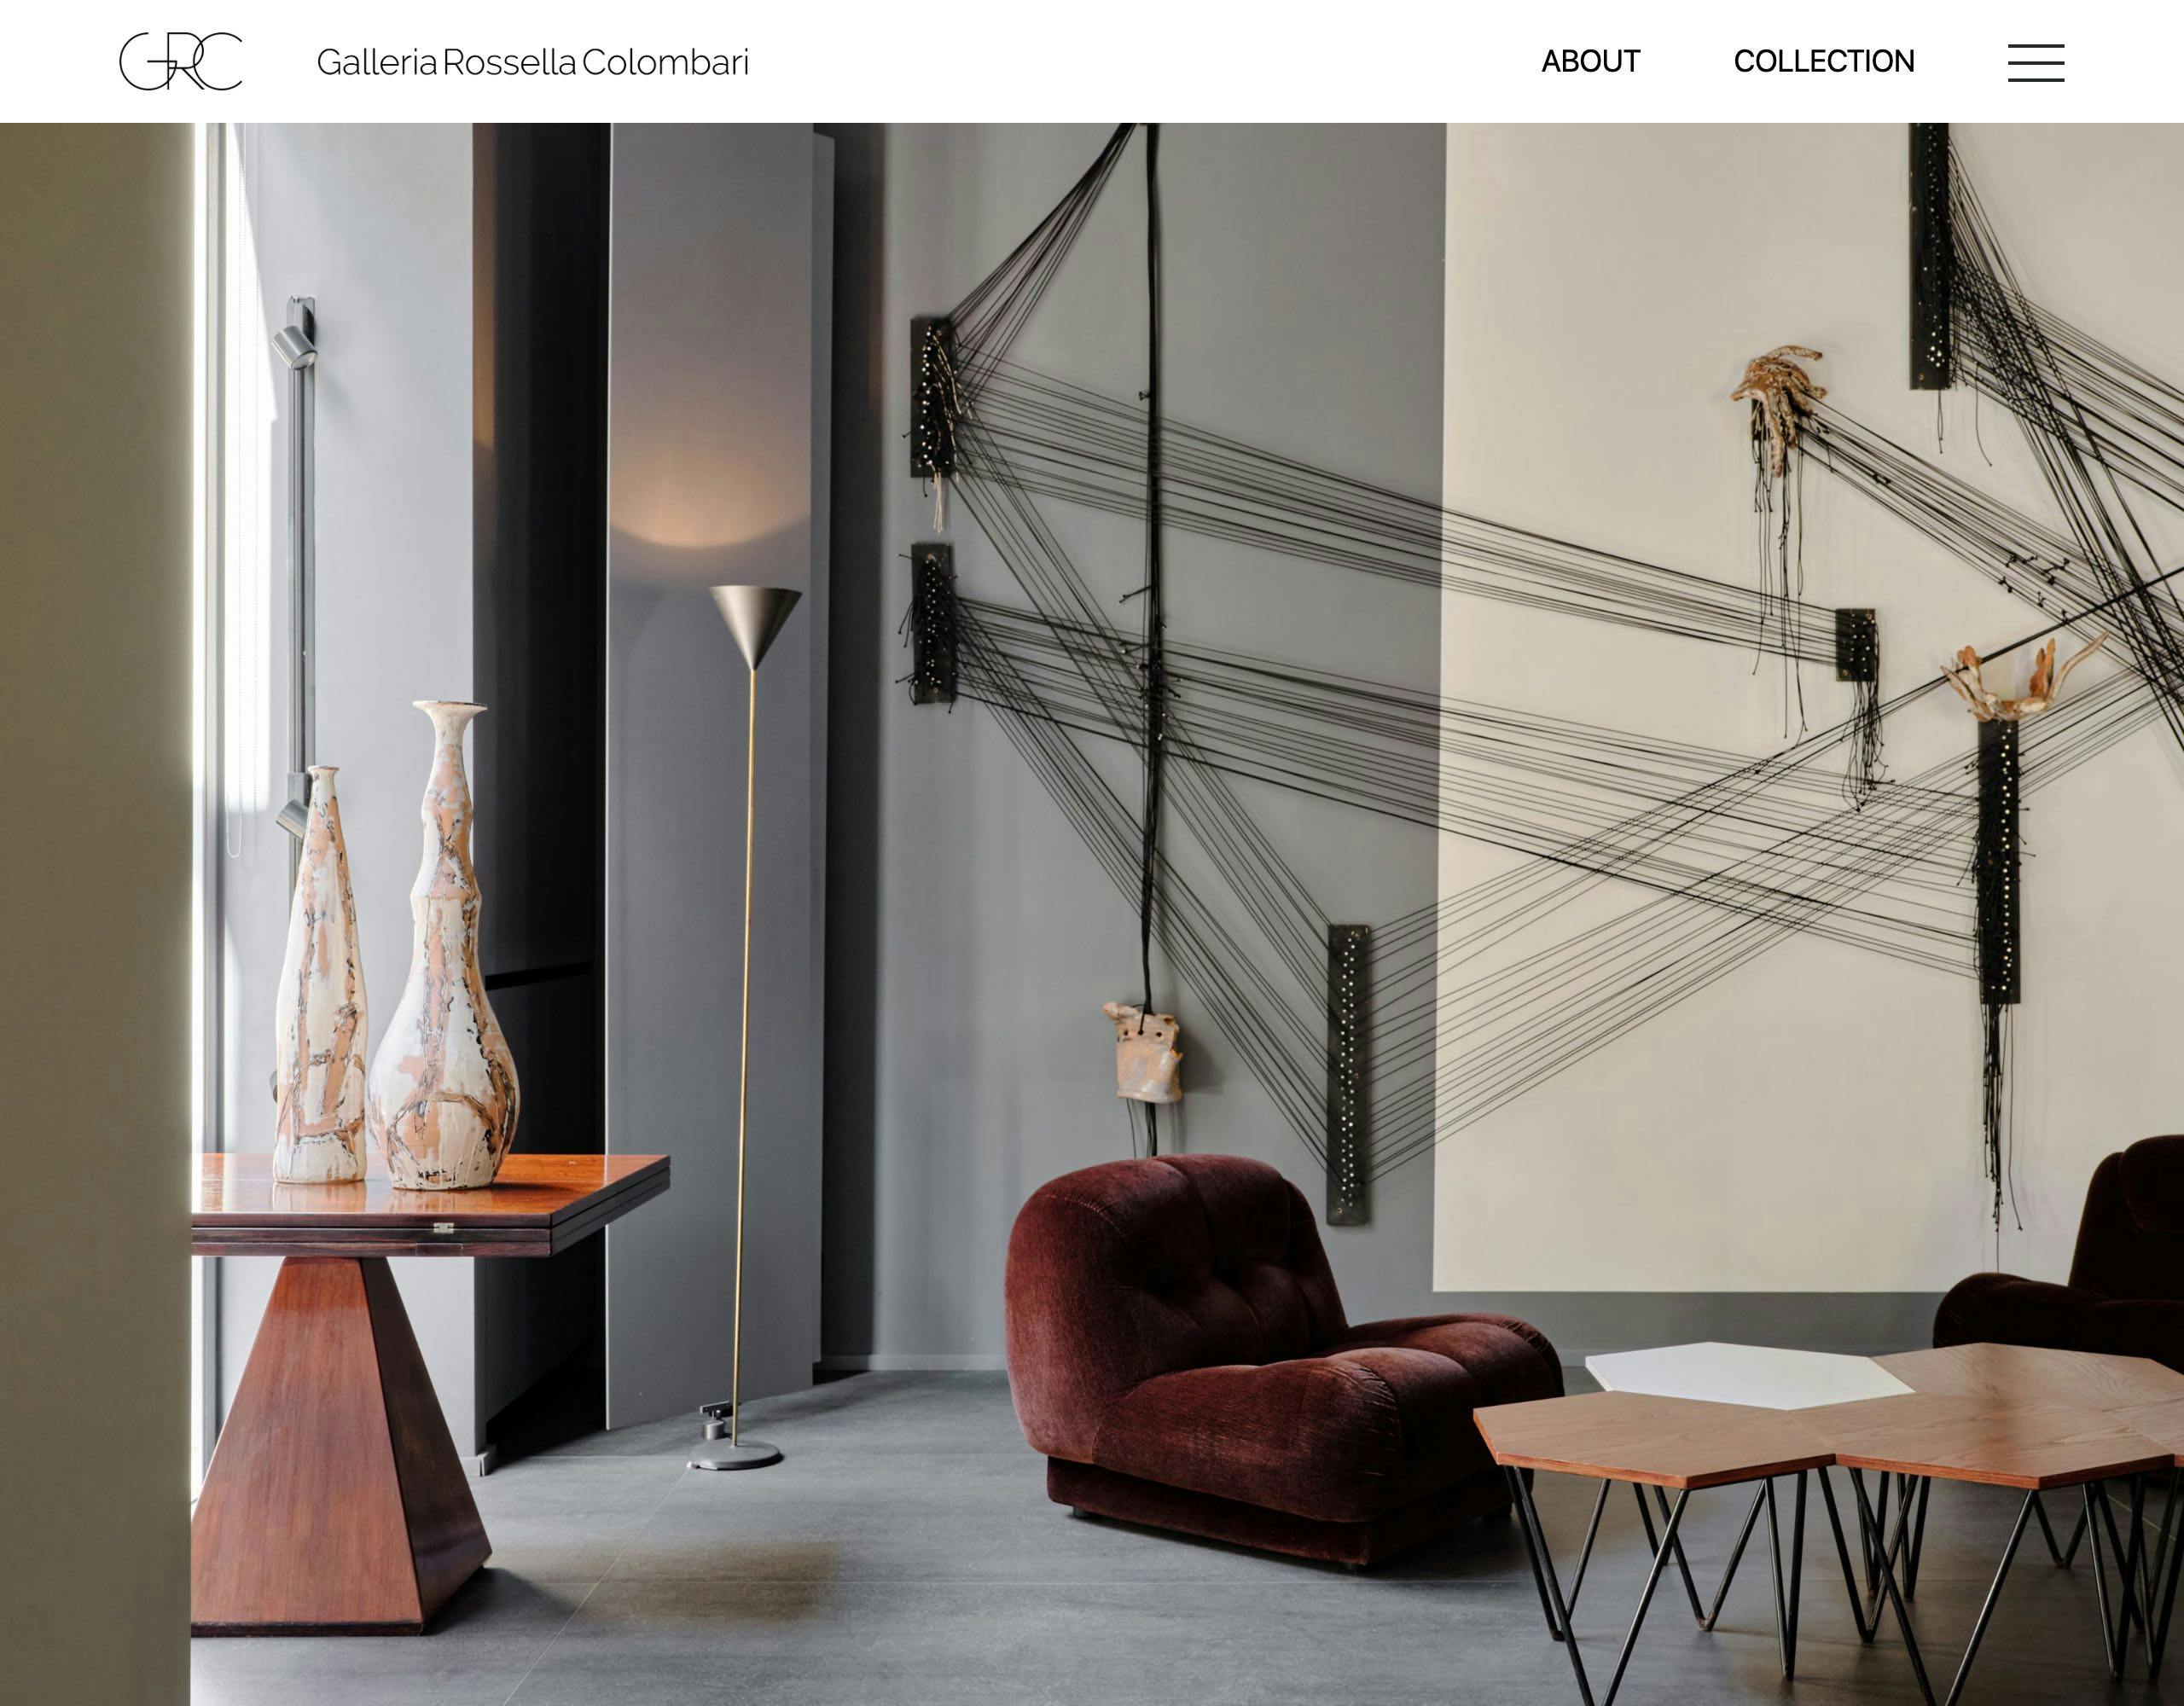 Galleria Rossella Colombari website